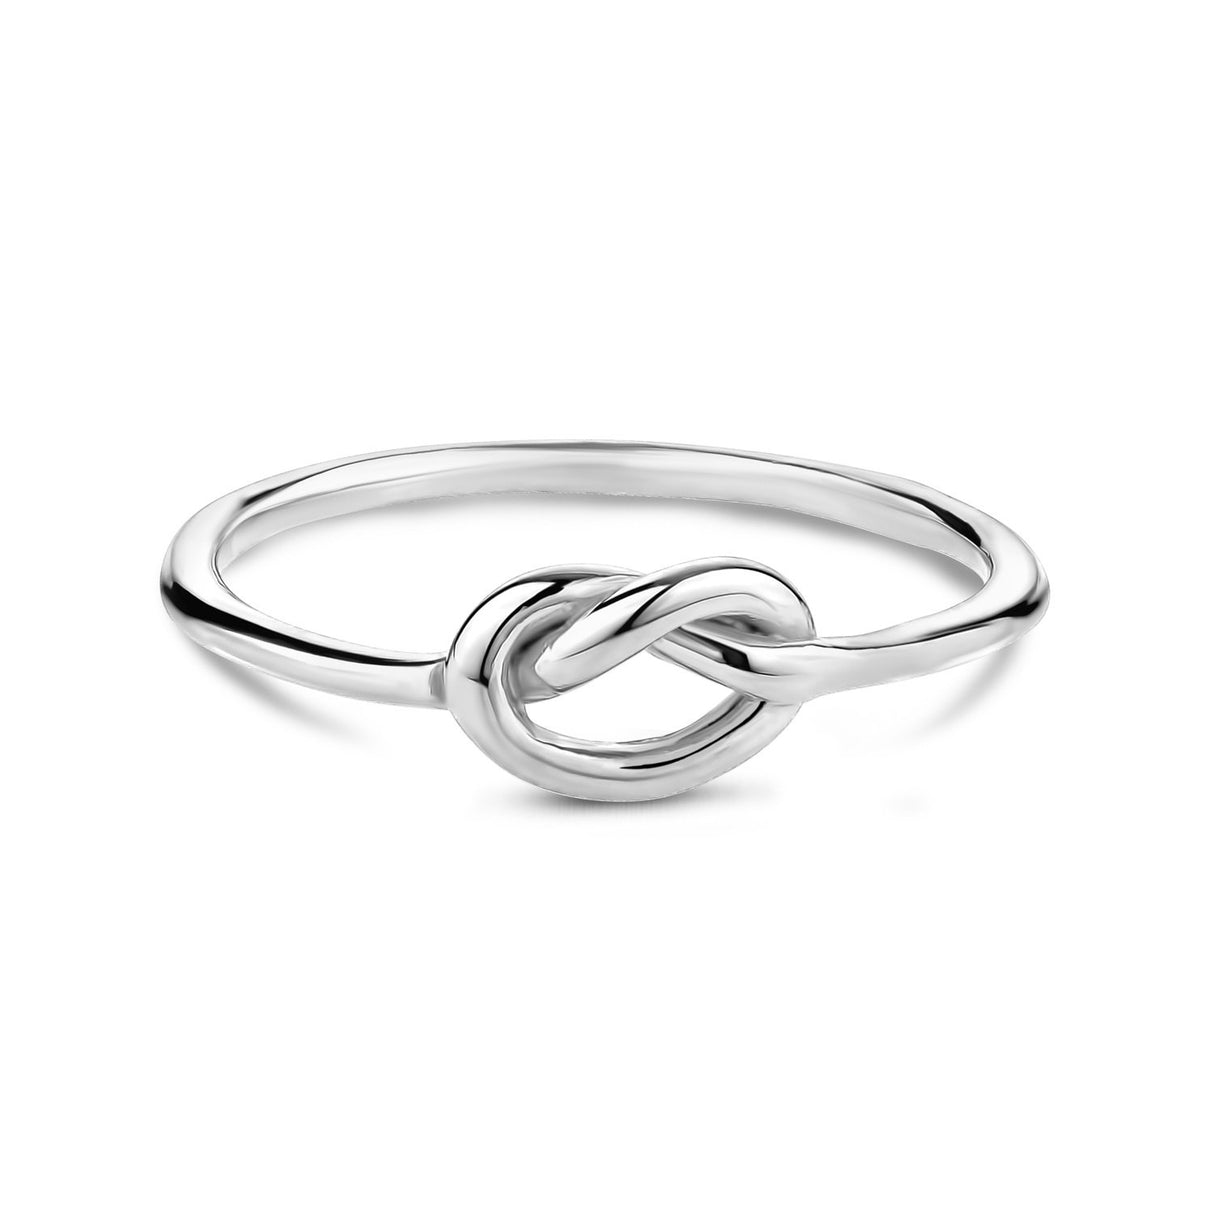 Frauen Ring - Minimal Edelstahl Liebesknoten Ring